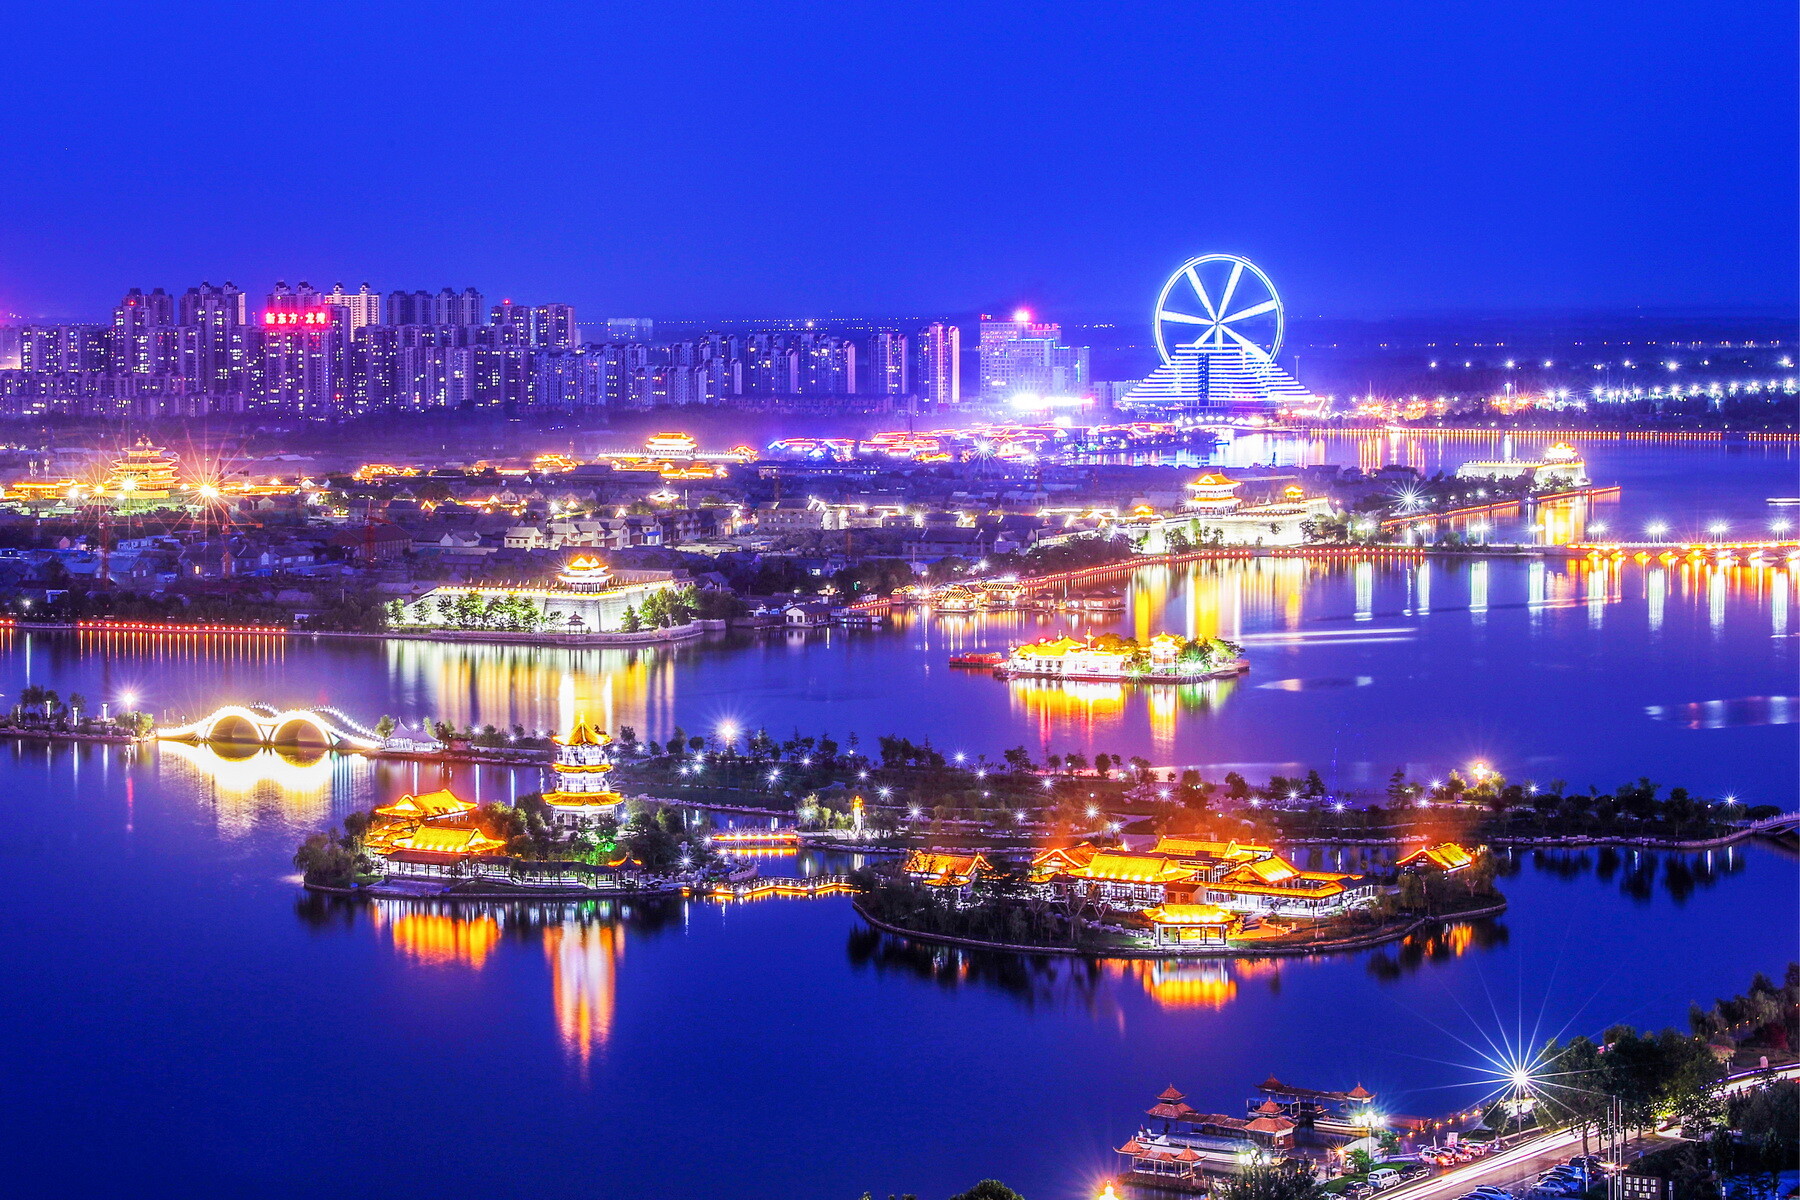 เมืองเหลียวเฉิงของจีนสานสัมพันธ์และสร้างความร่วมมือกับพอร์ตวิลา เมืองหลวงของวานูอาตู